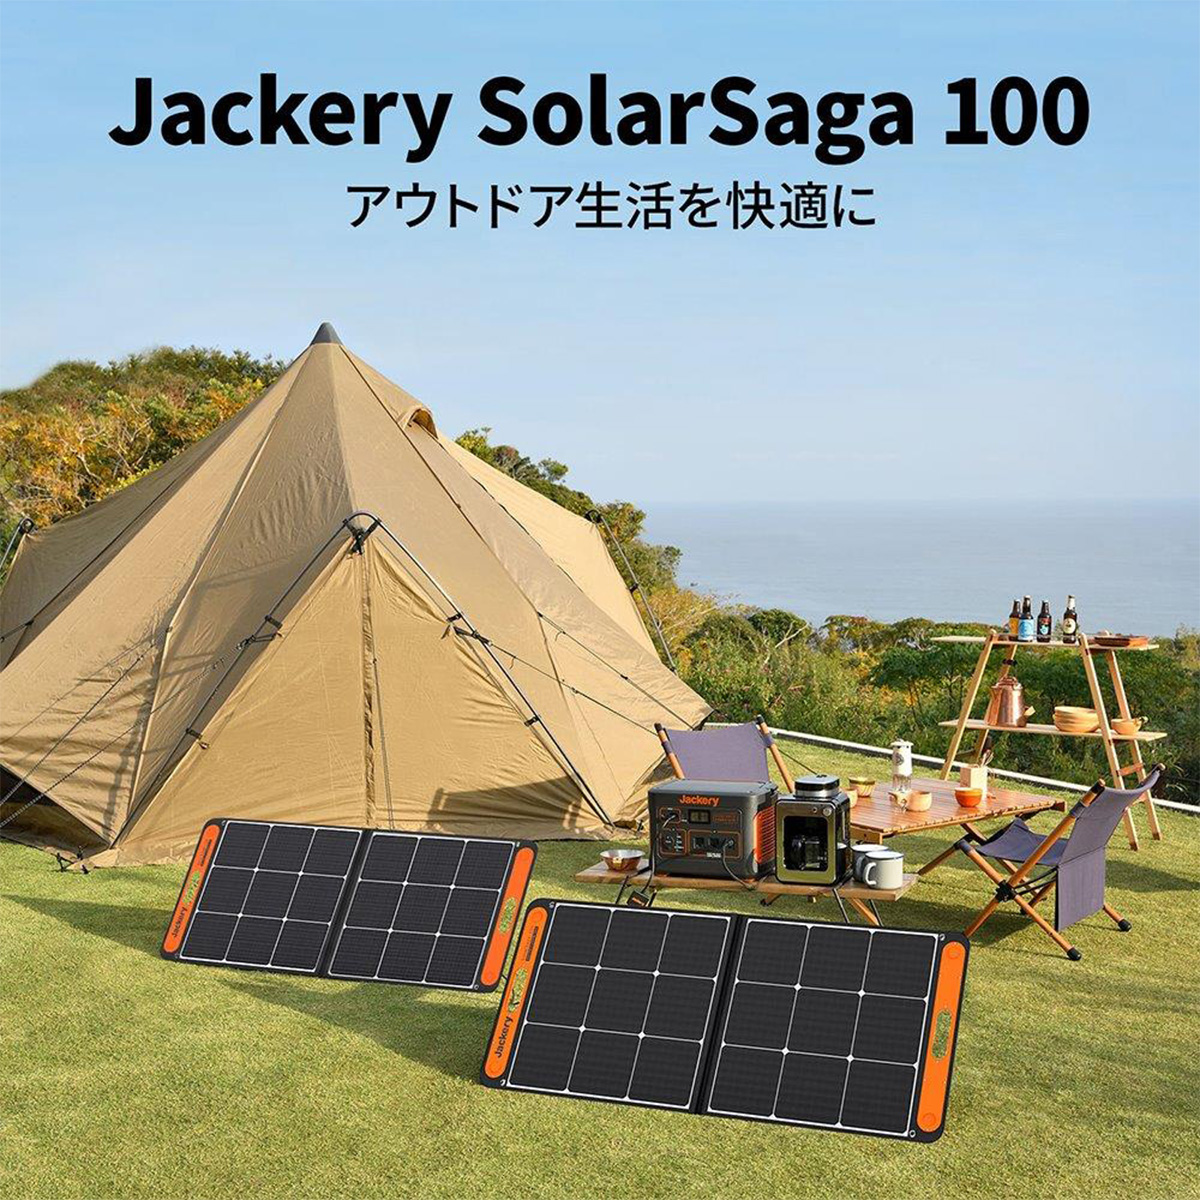 SolarSaga 100